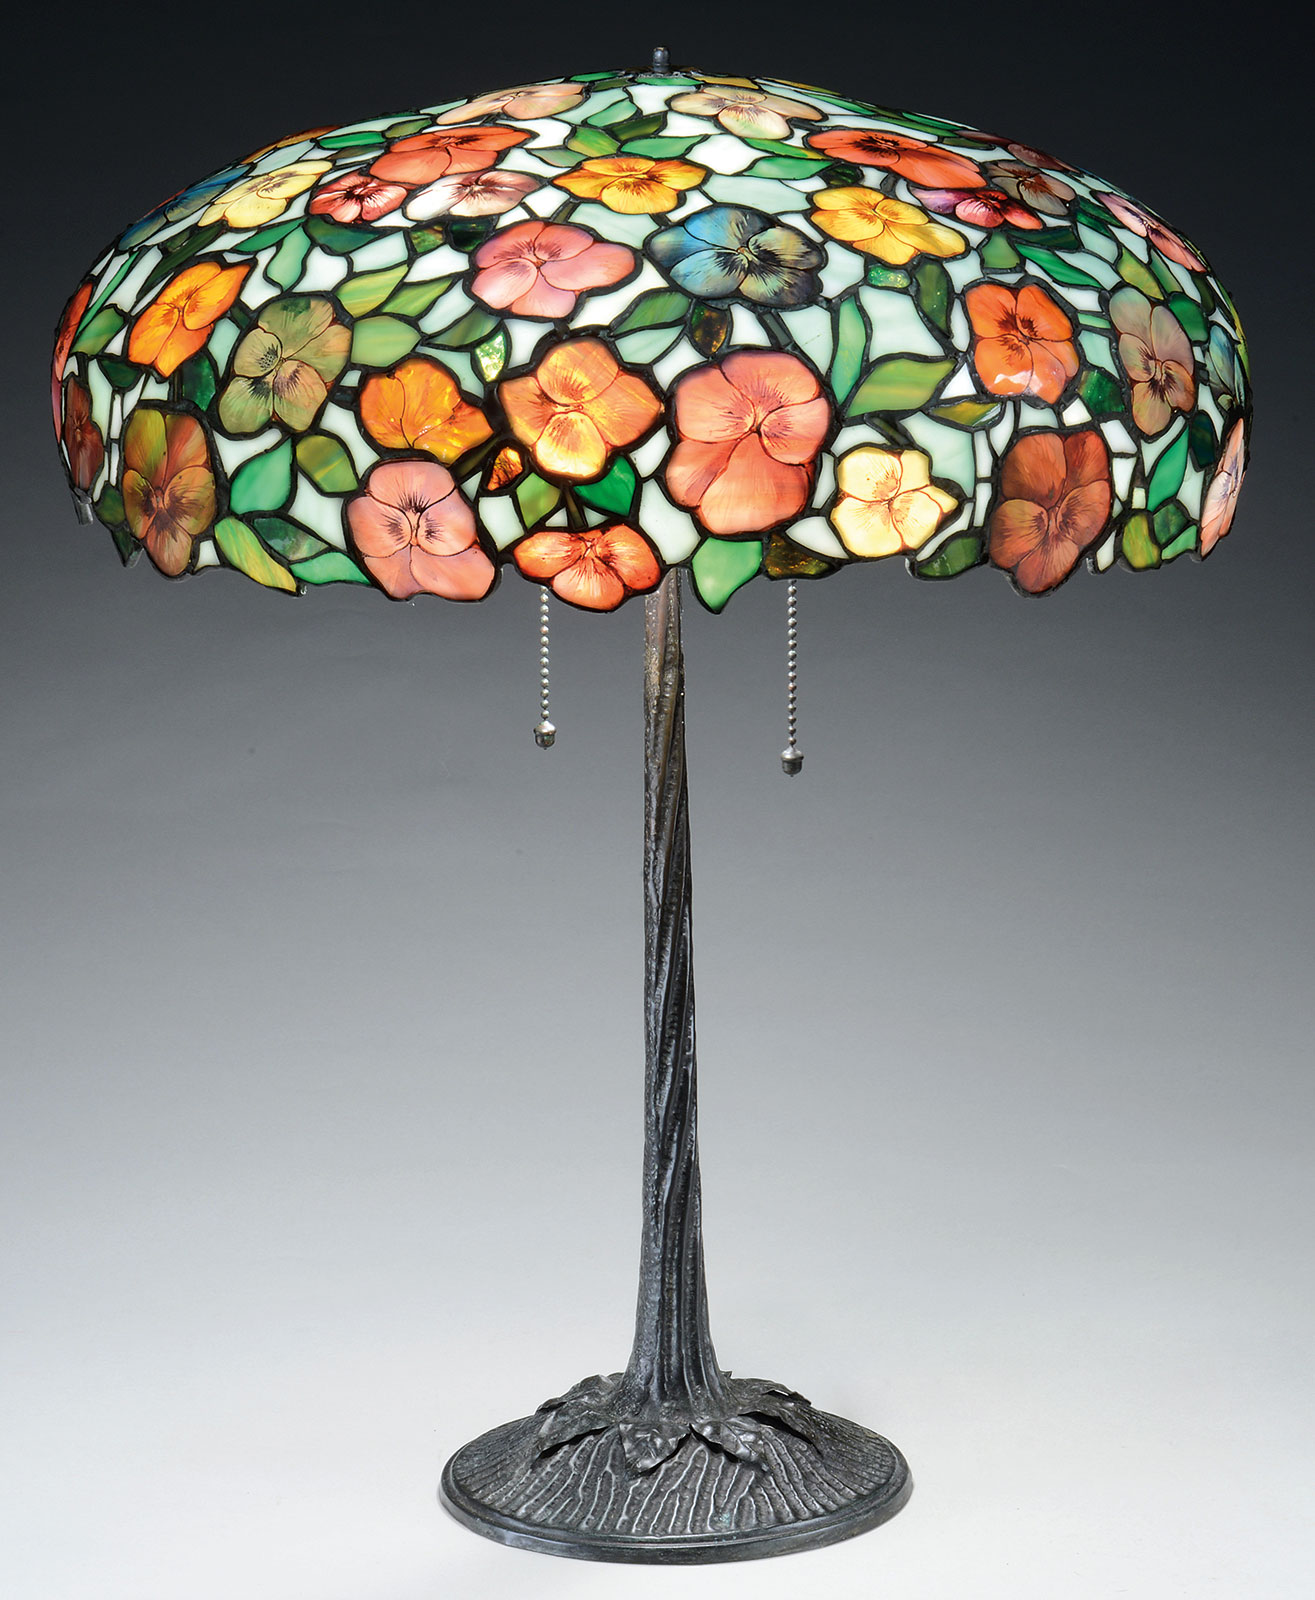 Morgan Pansy Table Lamp, estimated at $18,500-22,500.